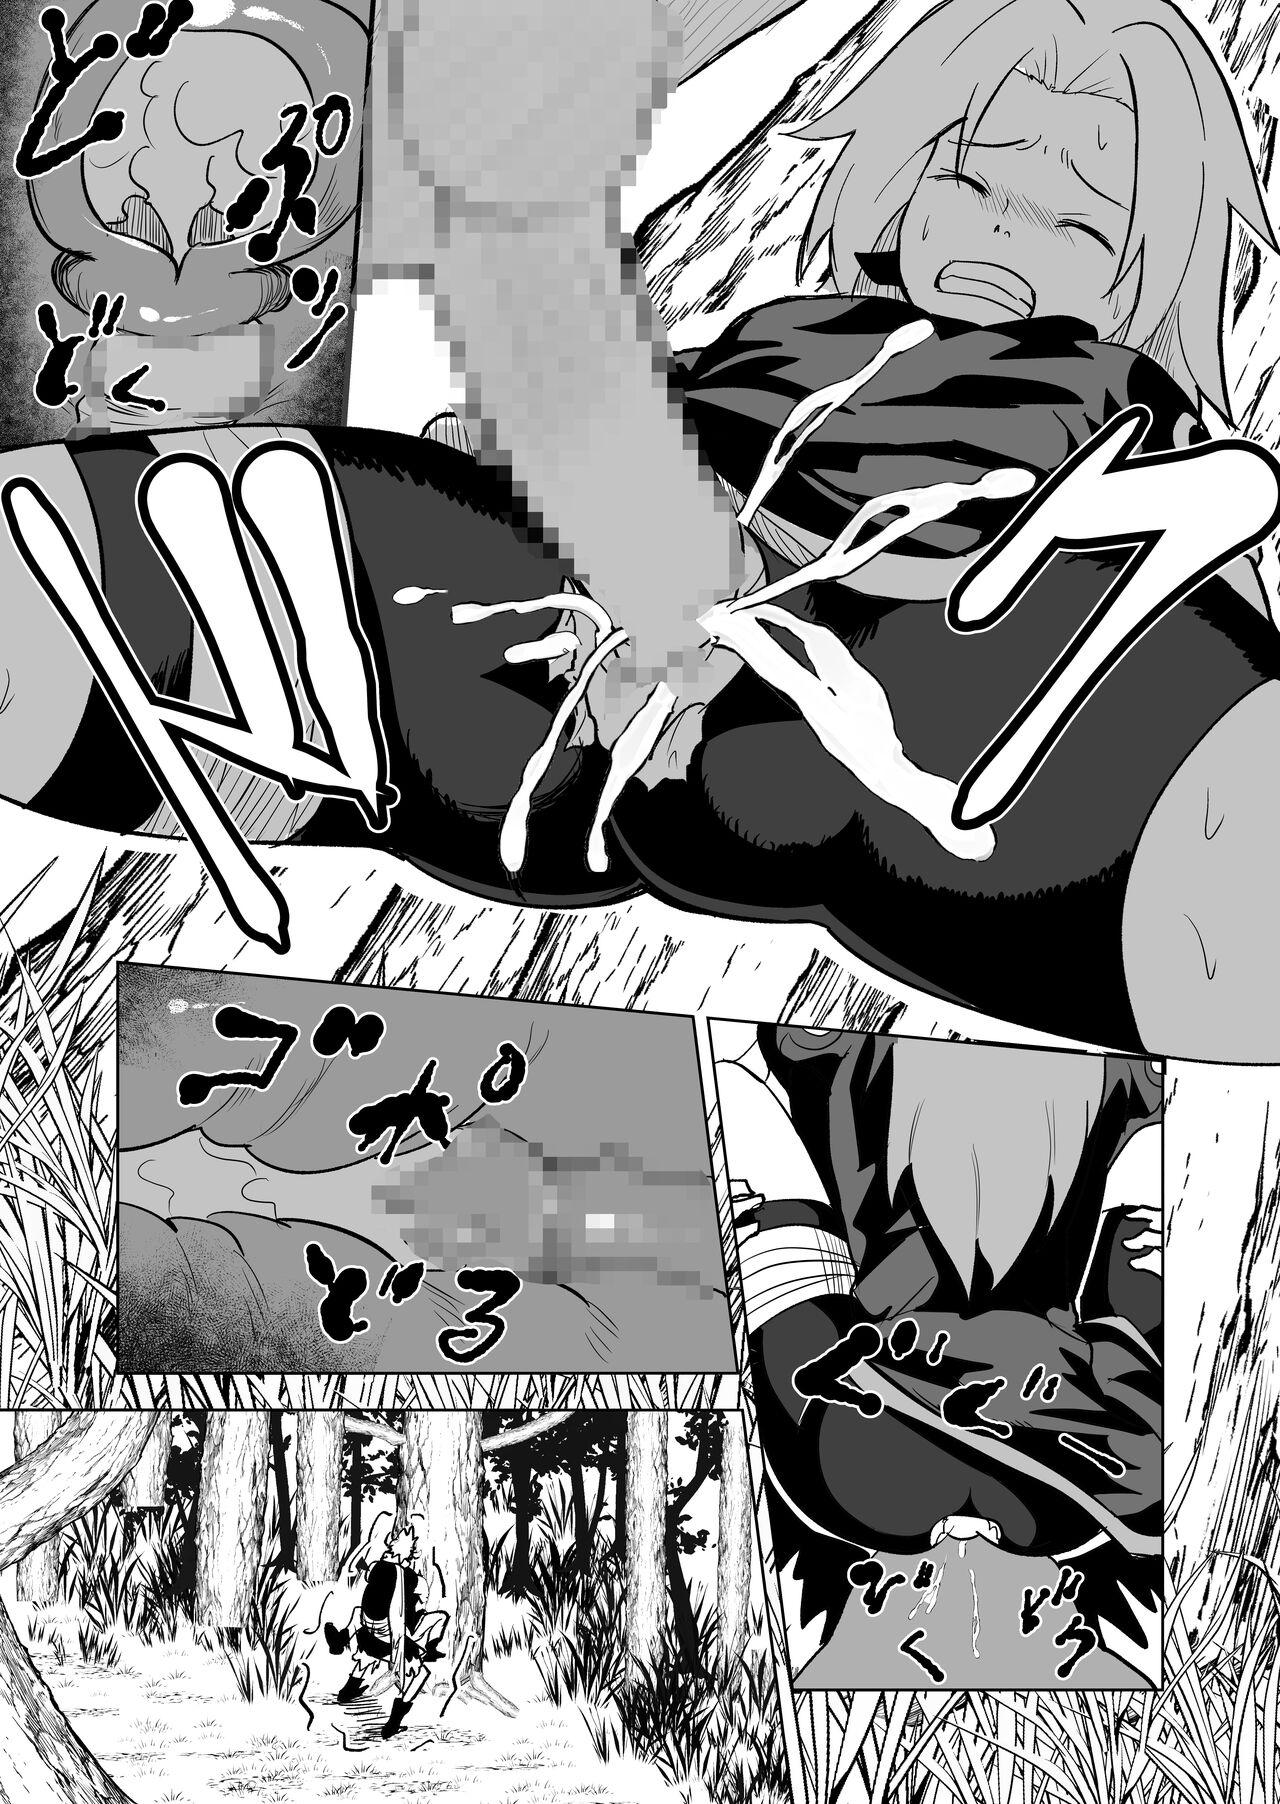 Masterbate 無限月読シリーズ サクラ - Naruto Licking - Page 8